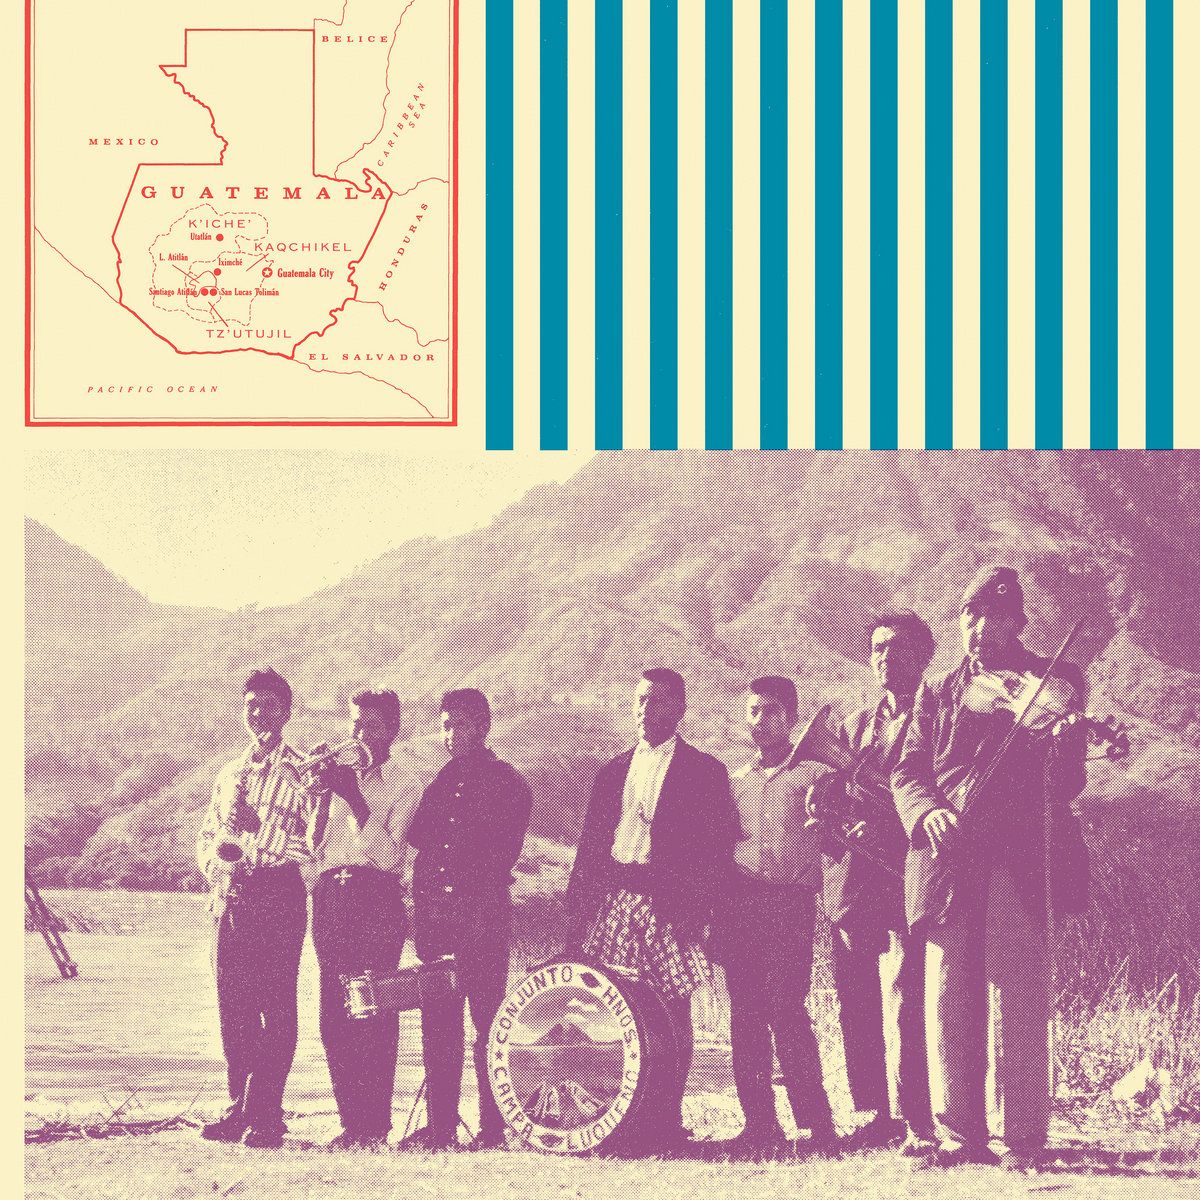 The San Lucas Band / 'La Voz de las Cumbres'